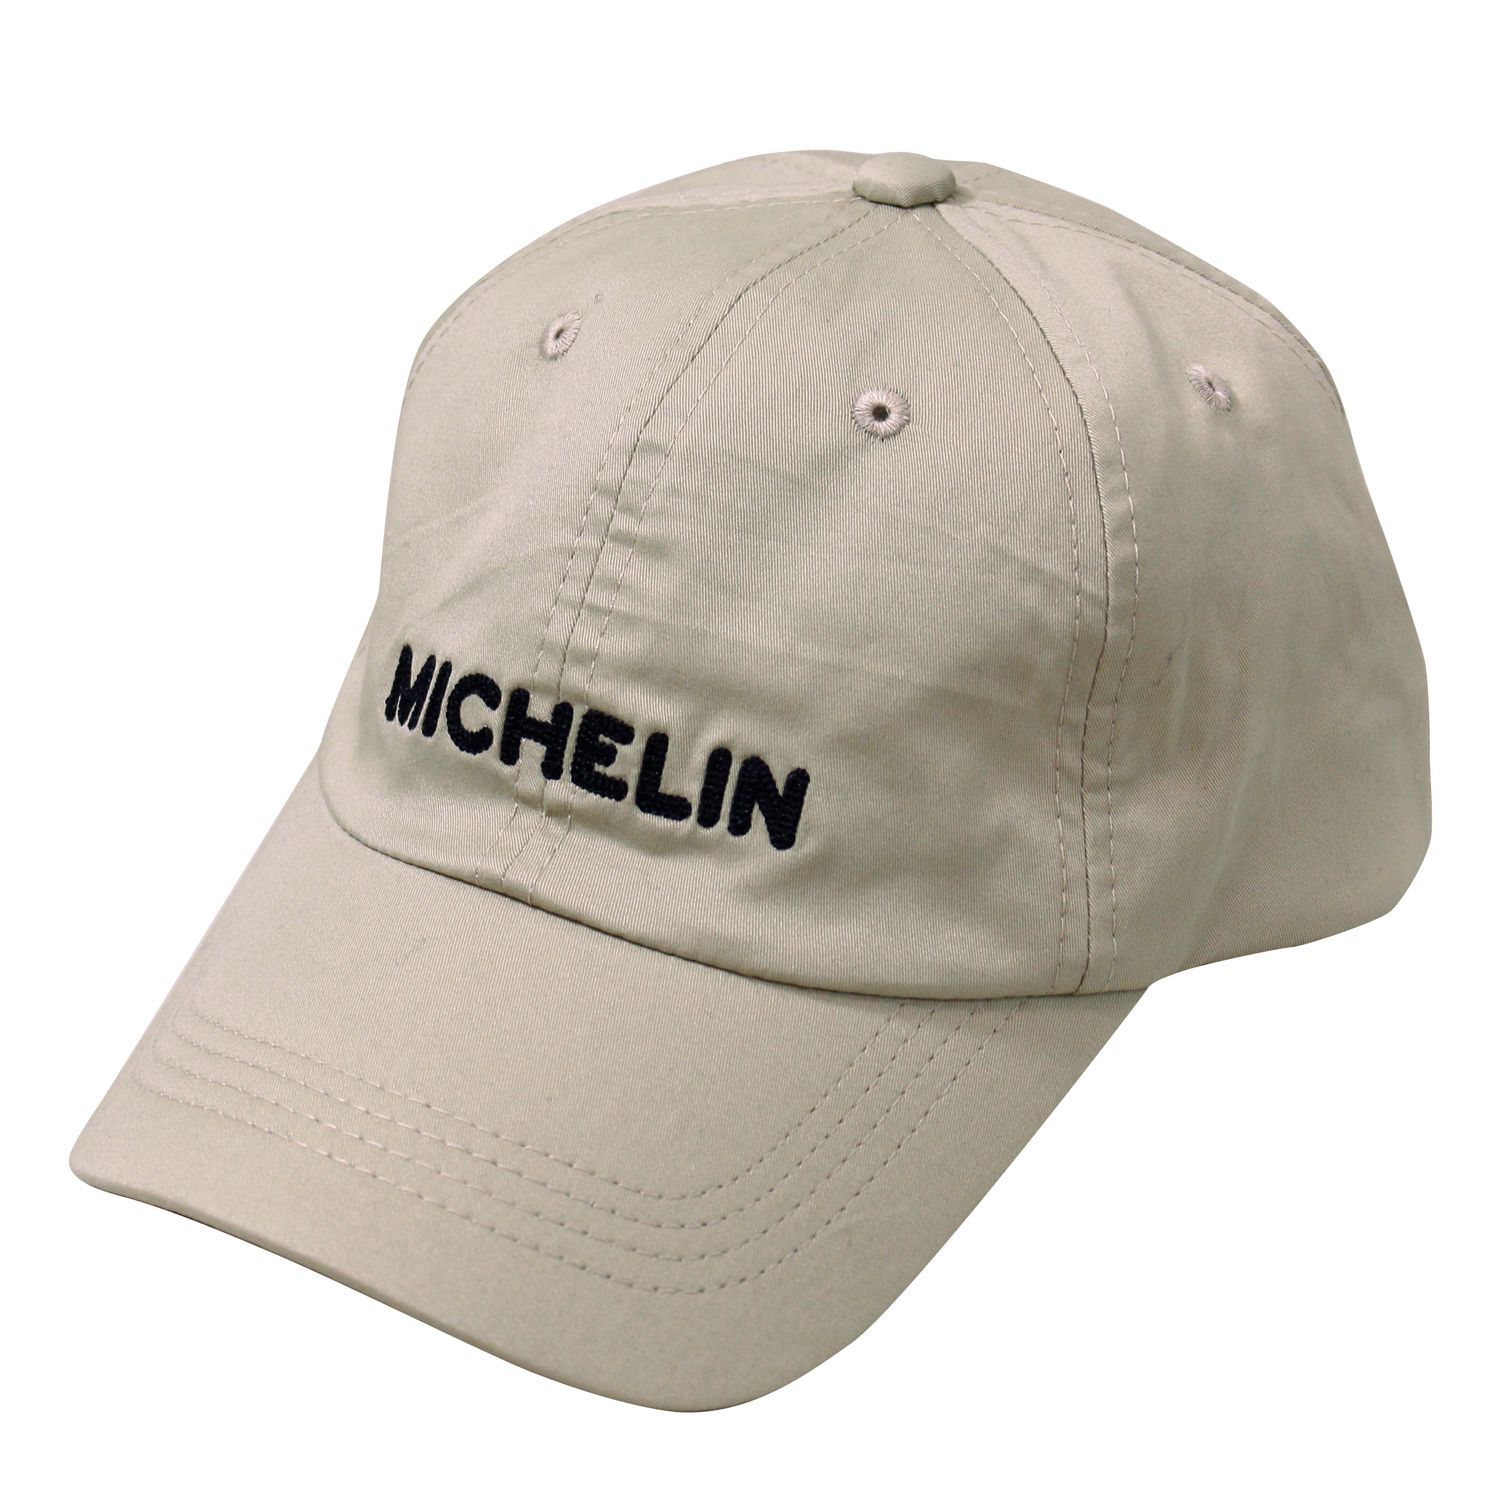 ミシュラン キャップ ローキャップ Michelin ミシュランマン ビバンダム 帽子 バイシクルギフト メルカリ